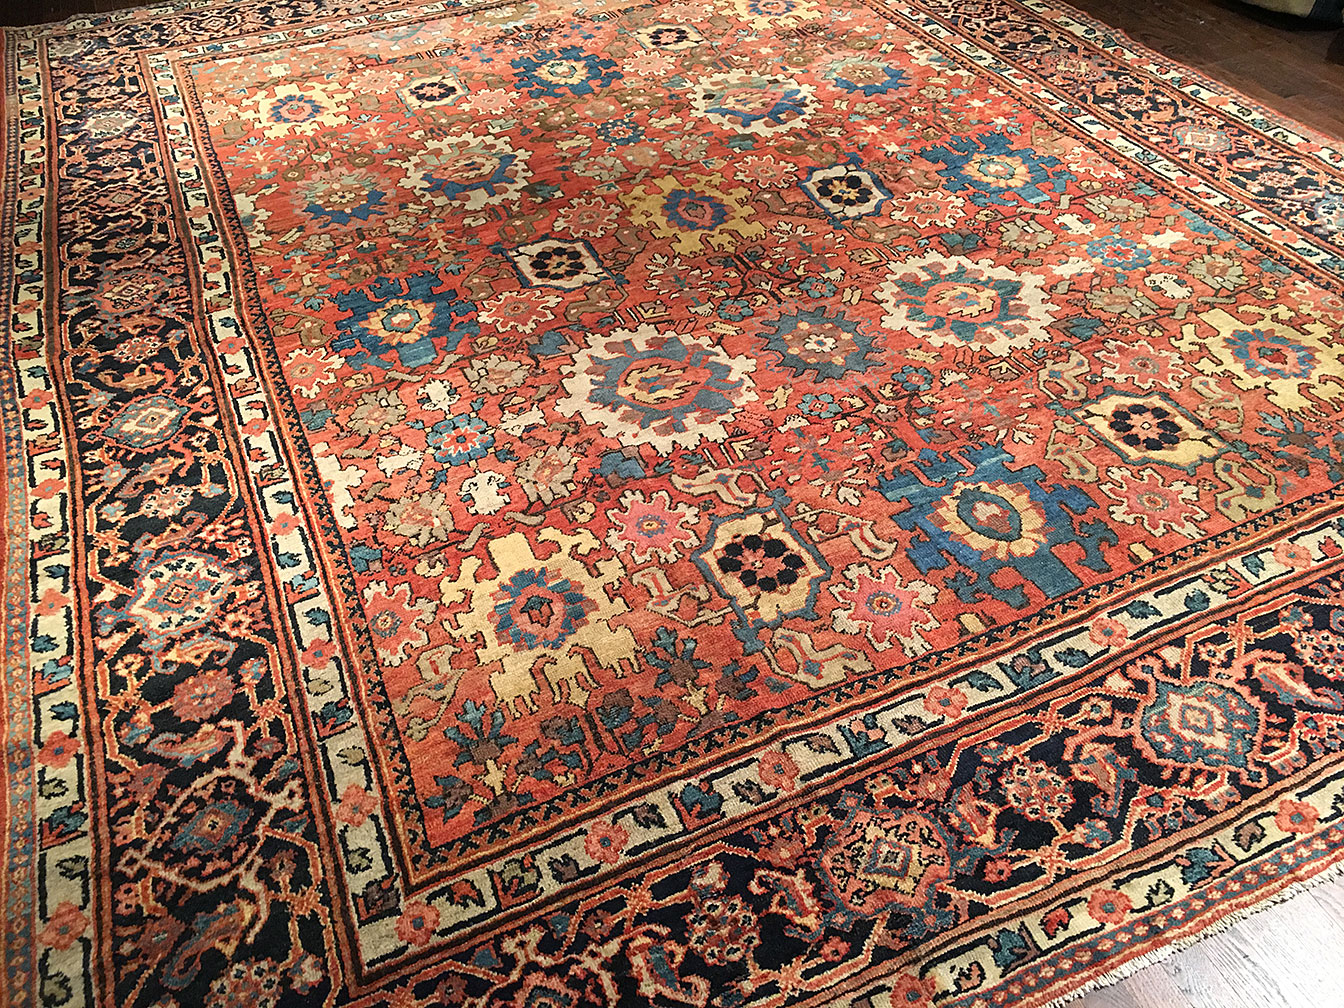 Antique sultan abad Carpet - # 51388